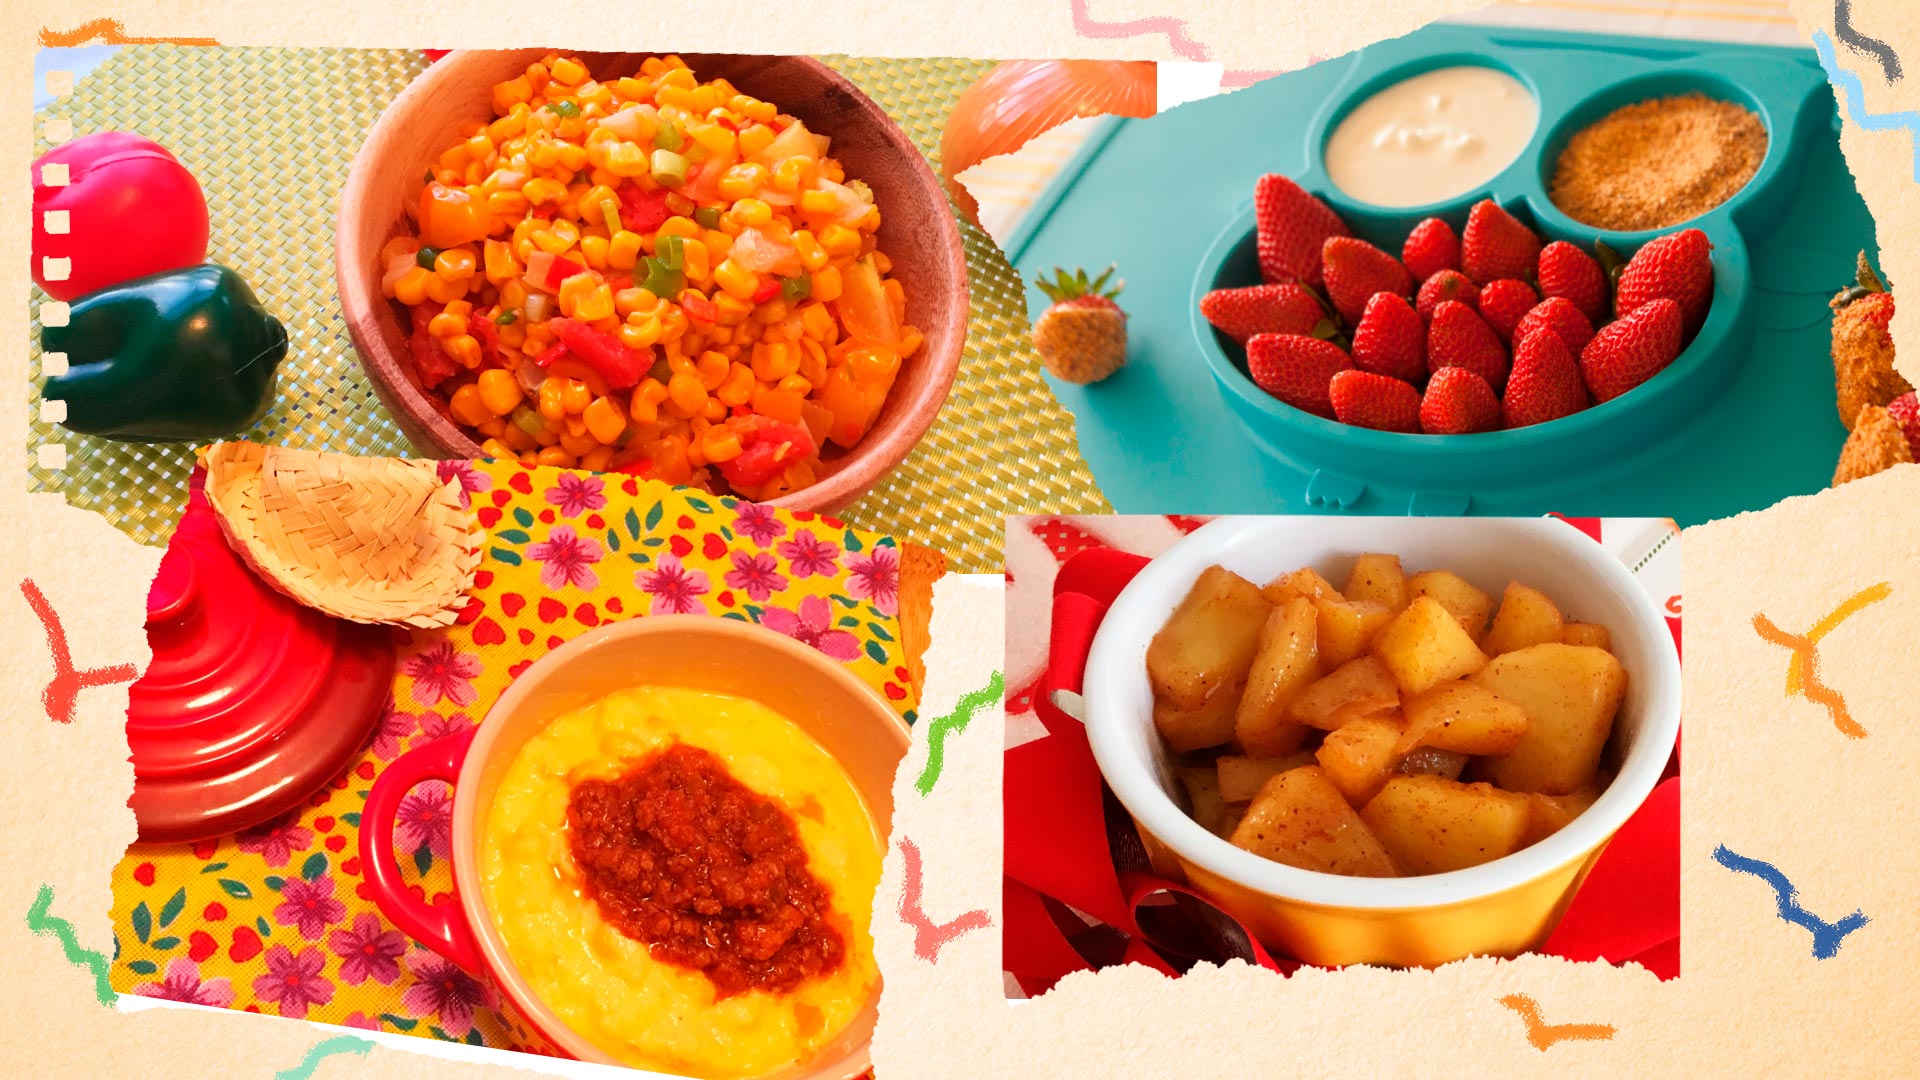 Foto de receitas típicas de festa juninas do canal Gourmet Jr. que prometem despertar sensações de novos sabores, texturas e aromas nas crianças.